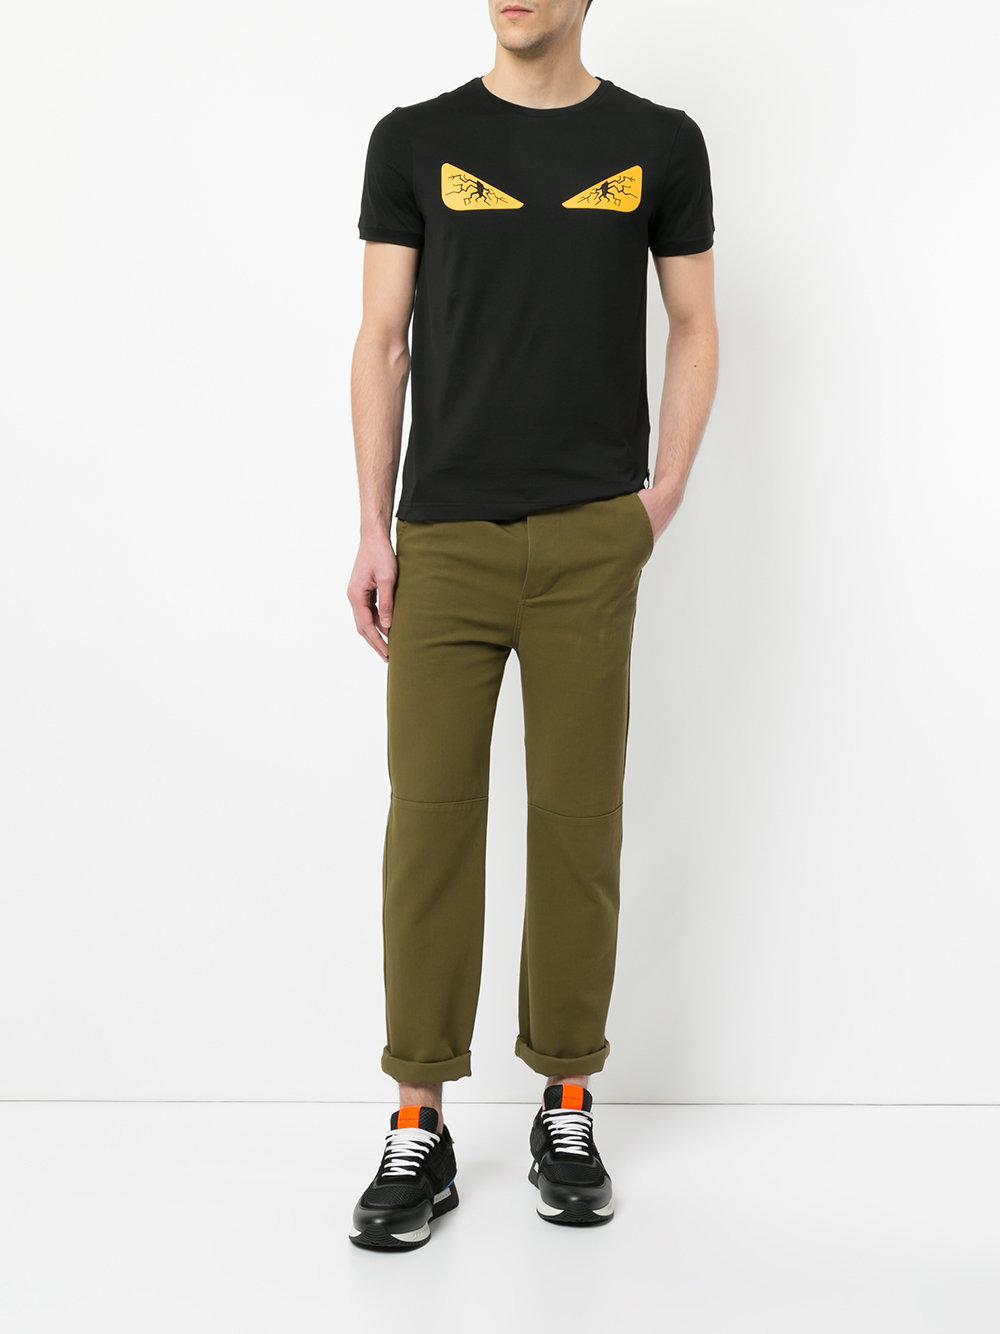 Fendi Bad Bugs T-shirt in Black for Men | Lyst